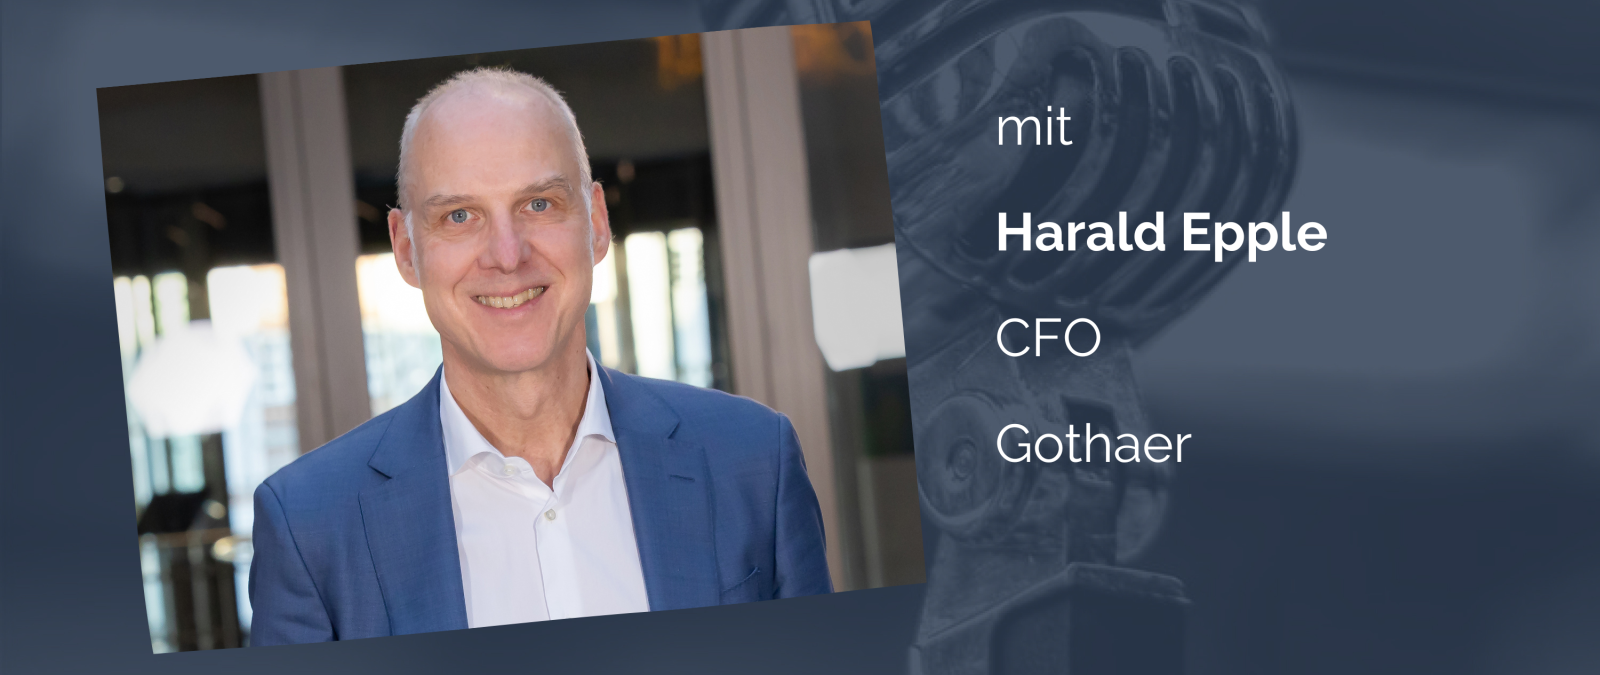 Nachhaltigkeit in der Kapitalanlage: Harald Epple (CFO der Gothaer) spricht darüber wie die Kapitalanlage eine nachhaltige Entwicklung unterstützen kann.